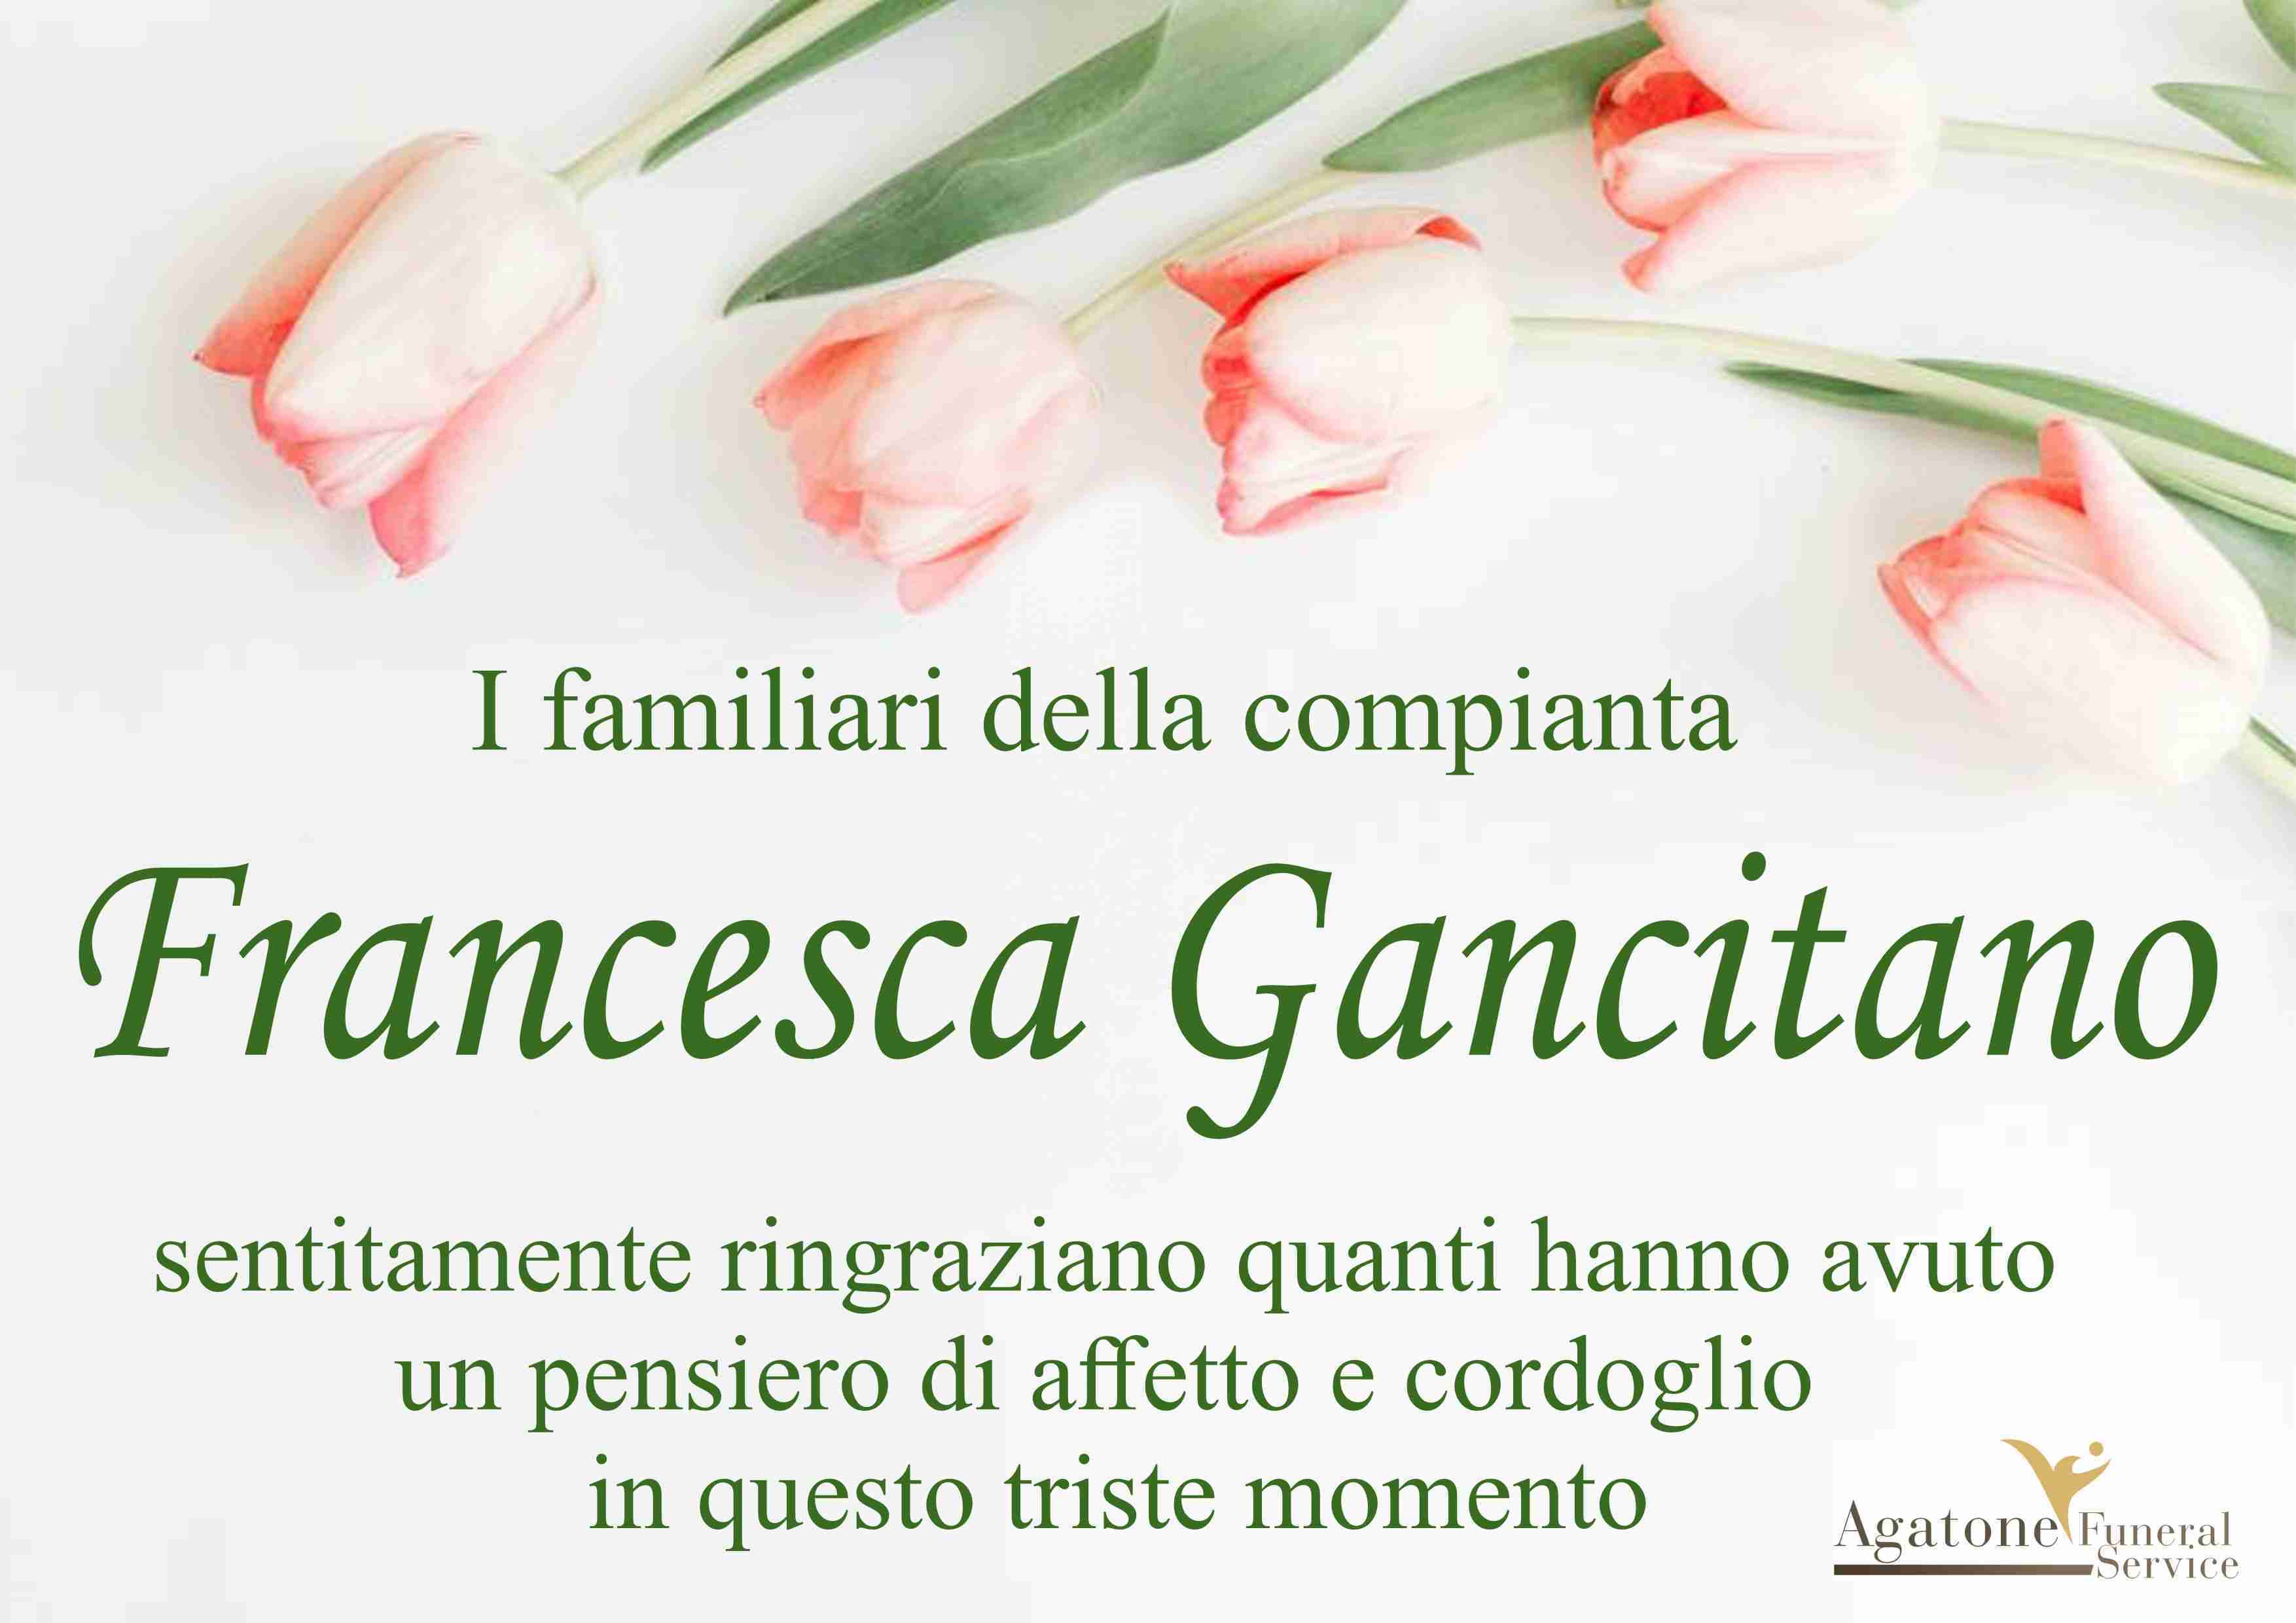 Francesca Gancitano